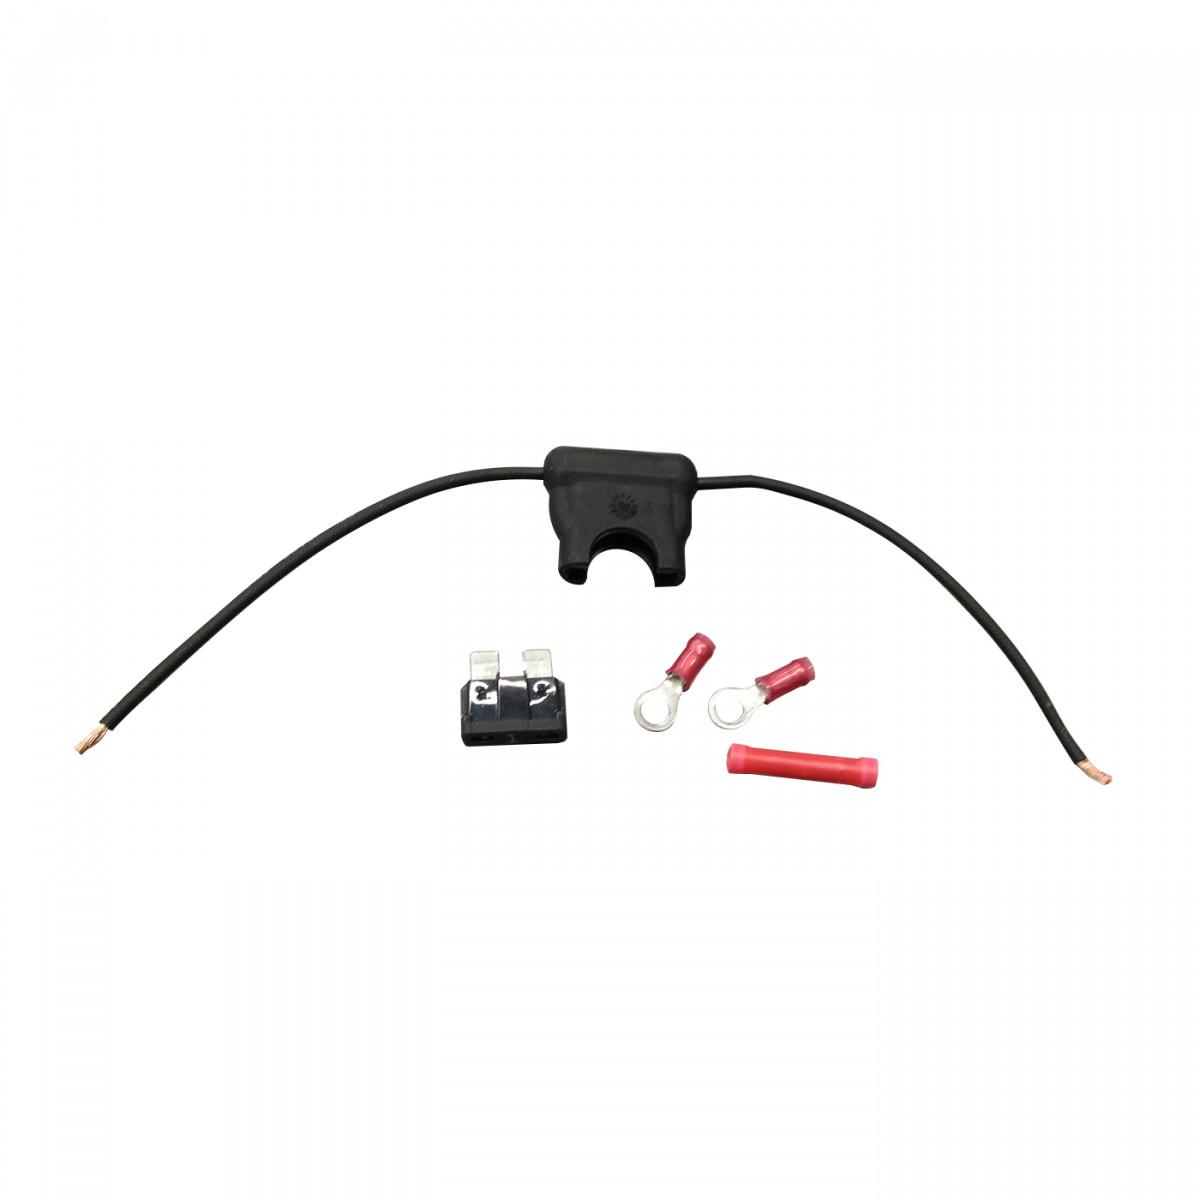 SEPURA Kfz-Ladekabel, einzeln für SC21 Car-Kit Power, Kfz-Halterung 700-00875